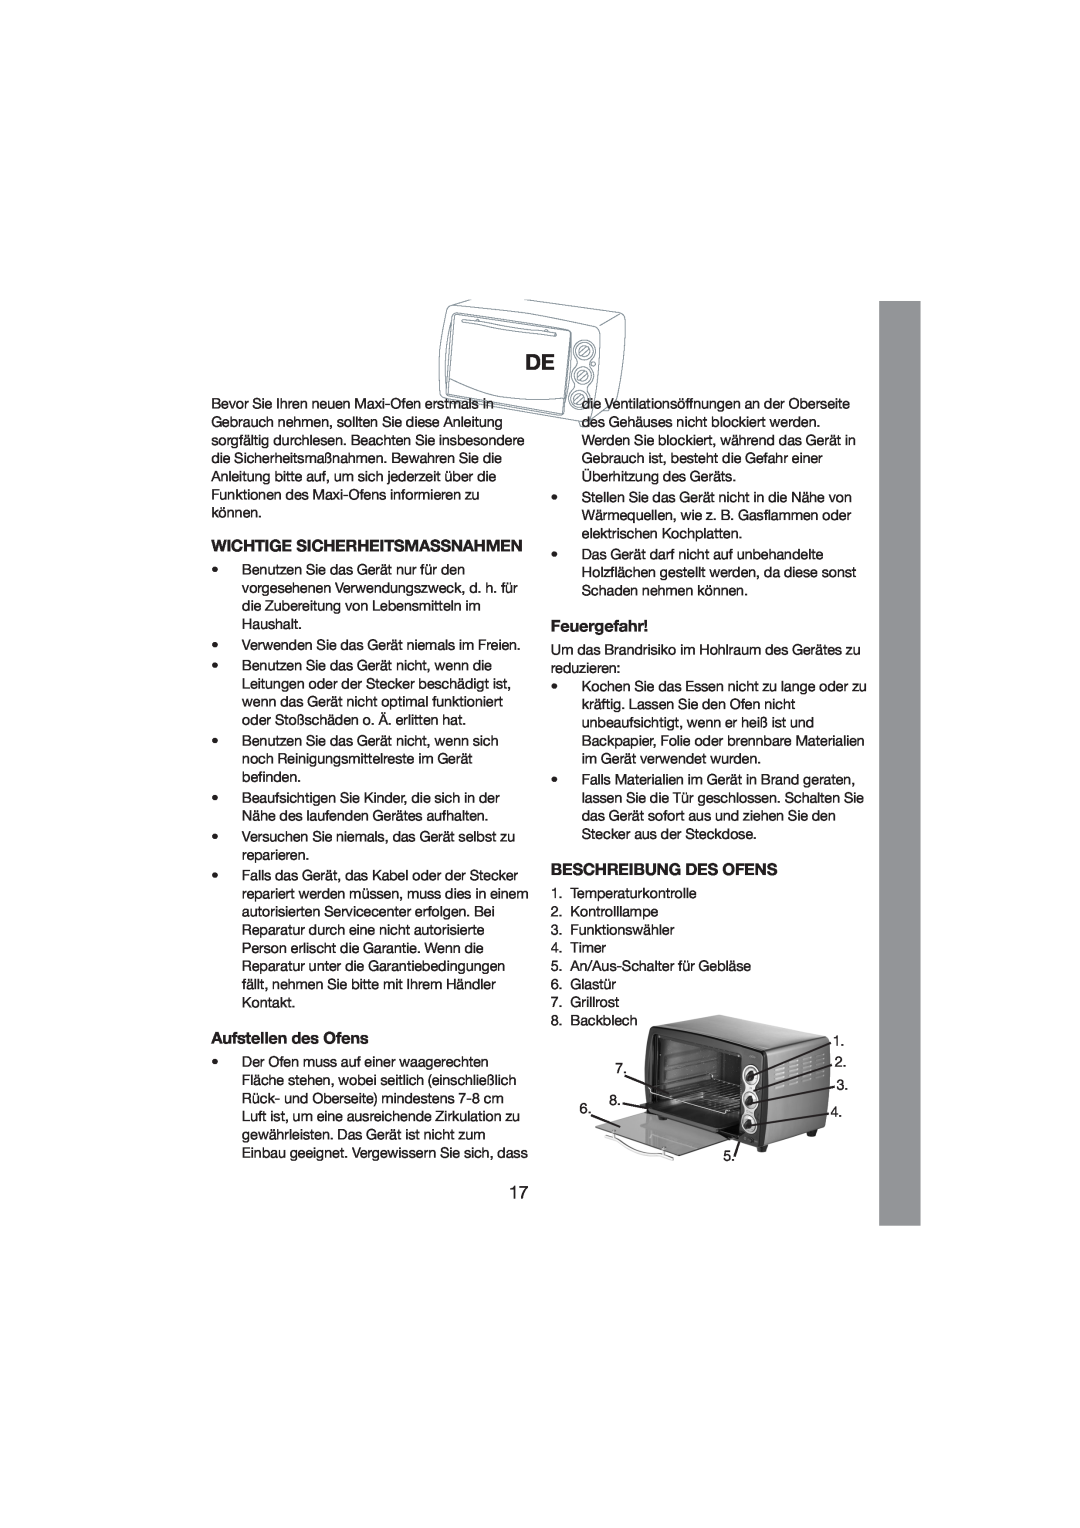 Melissa 251-003/004 manual Wichtige Sicherheitsmassnahmen, Aufstellen des Ofens, Feuergefahr, Beschreibung Des Ofens 